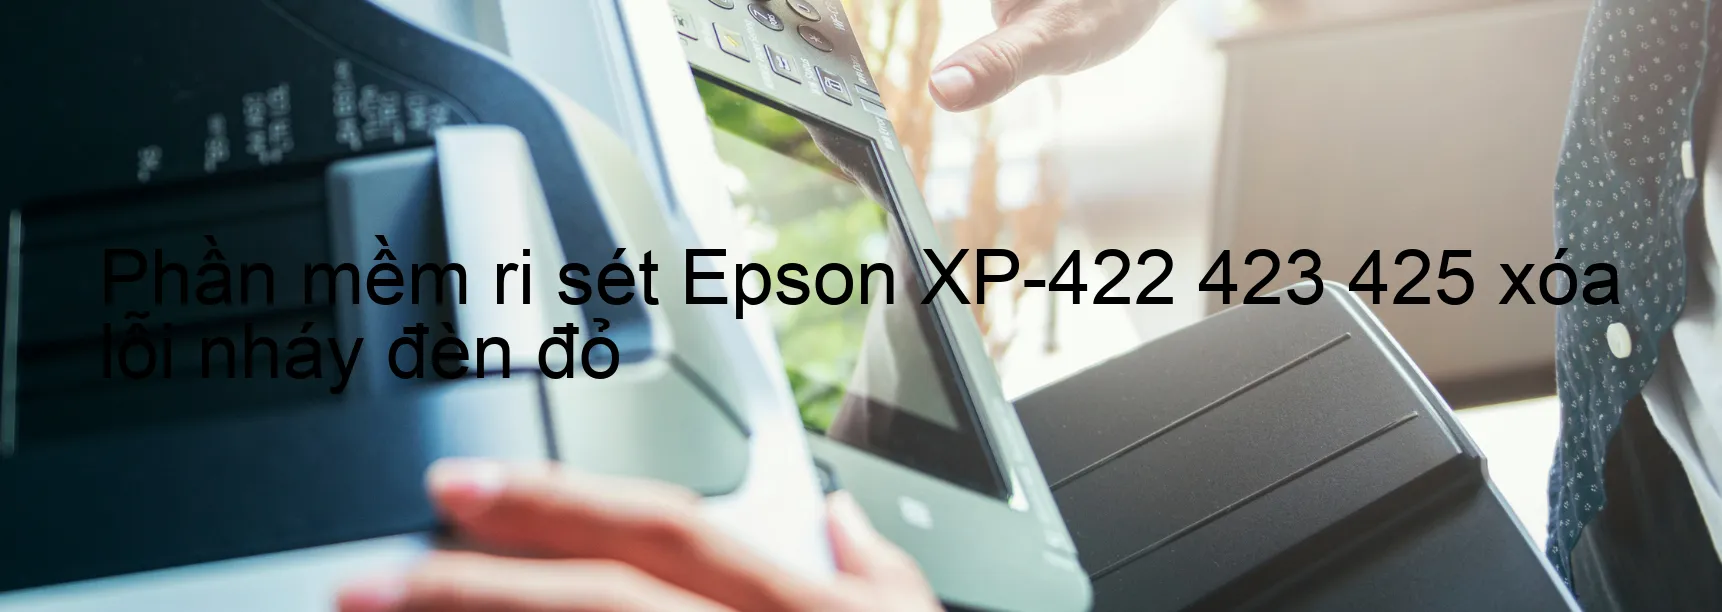 Phần mềm reset Epson XP-422 423 425 xóa lỗi nháy đèn đỏ